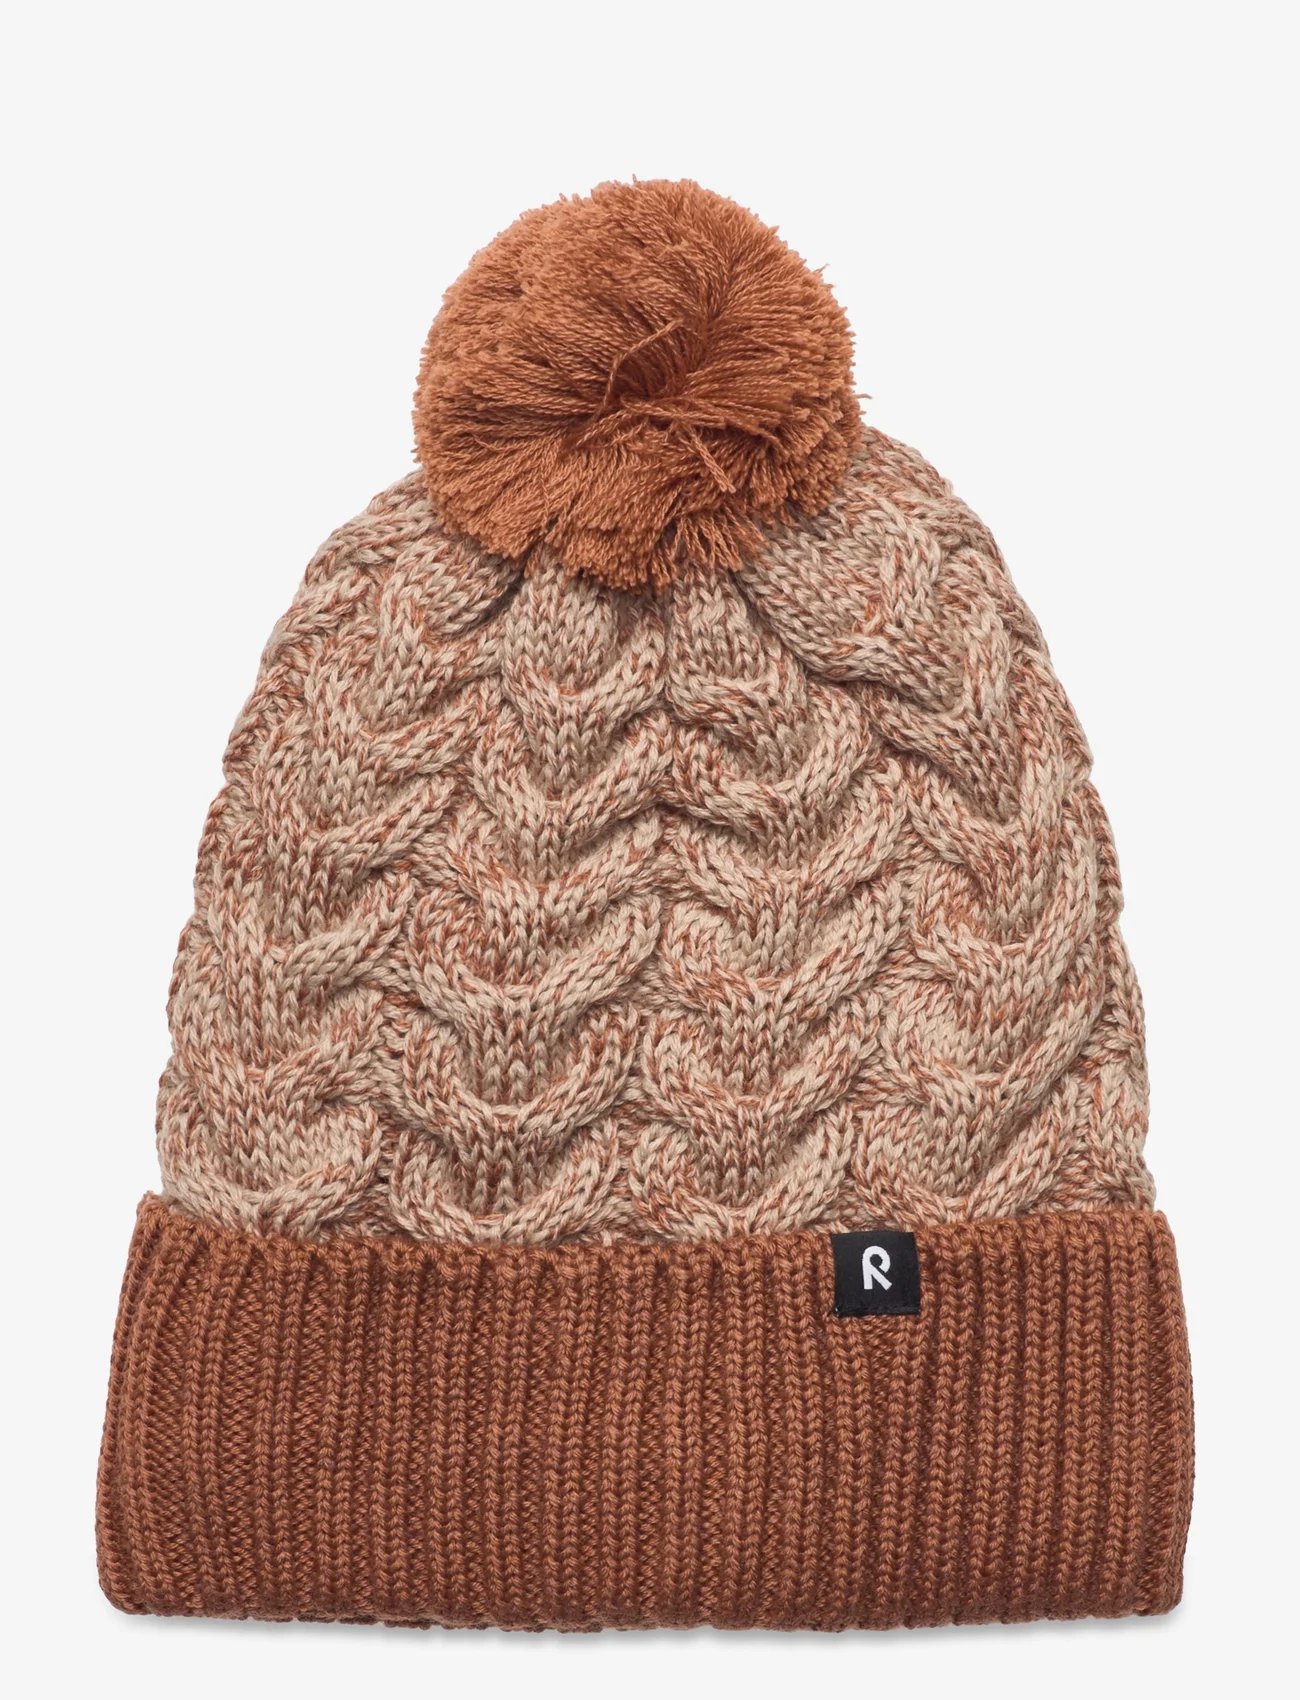 Reima - Beanie, Routii - winter hats - cinnamon brown - 0